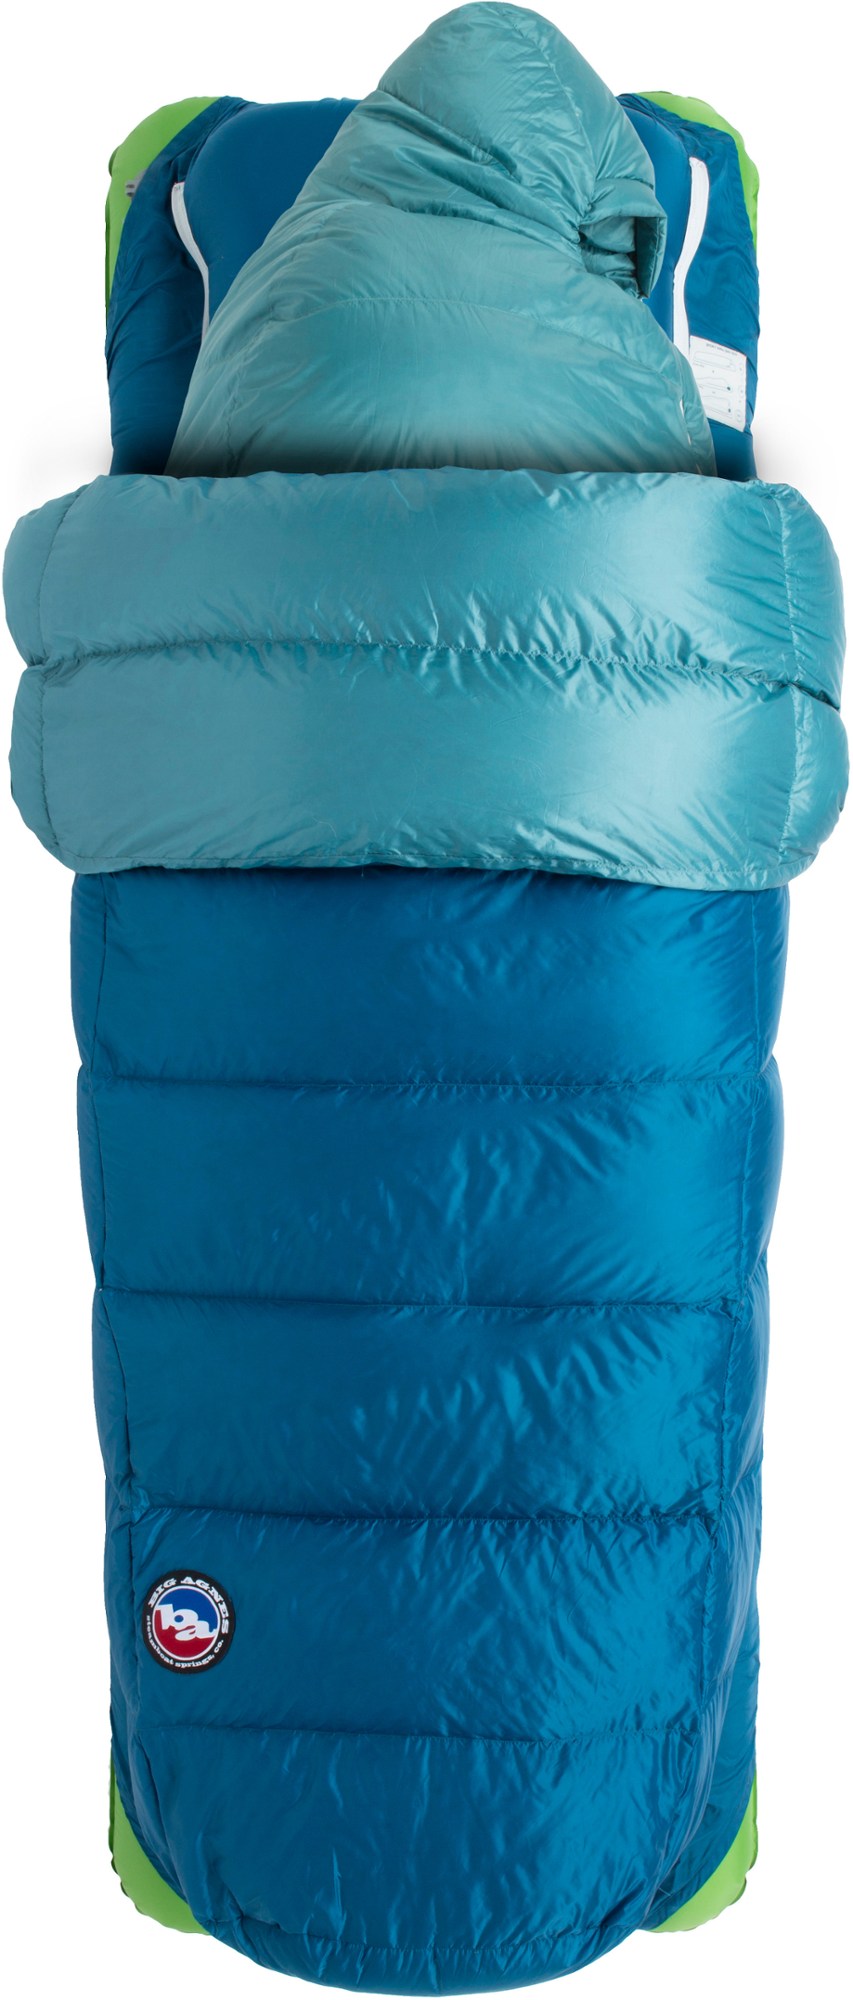 двойной спальный мешок dream island синтетика 20f big agnes светло голубой оранжевый Спальный мешок Roxy Ann 3N1 15 - женский Big Agnes, синий